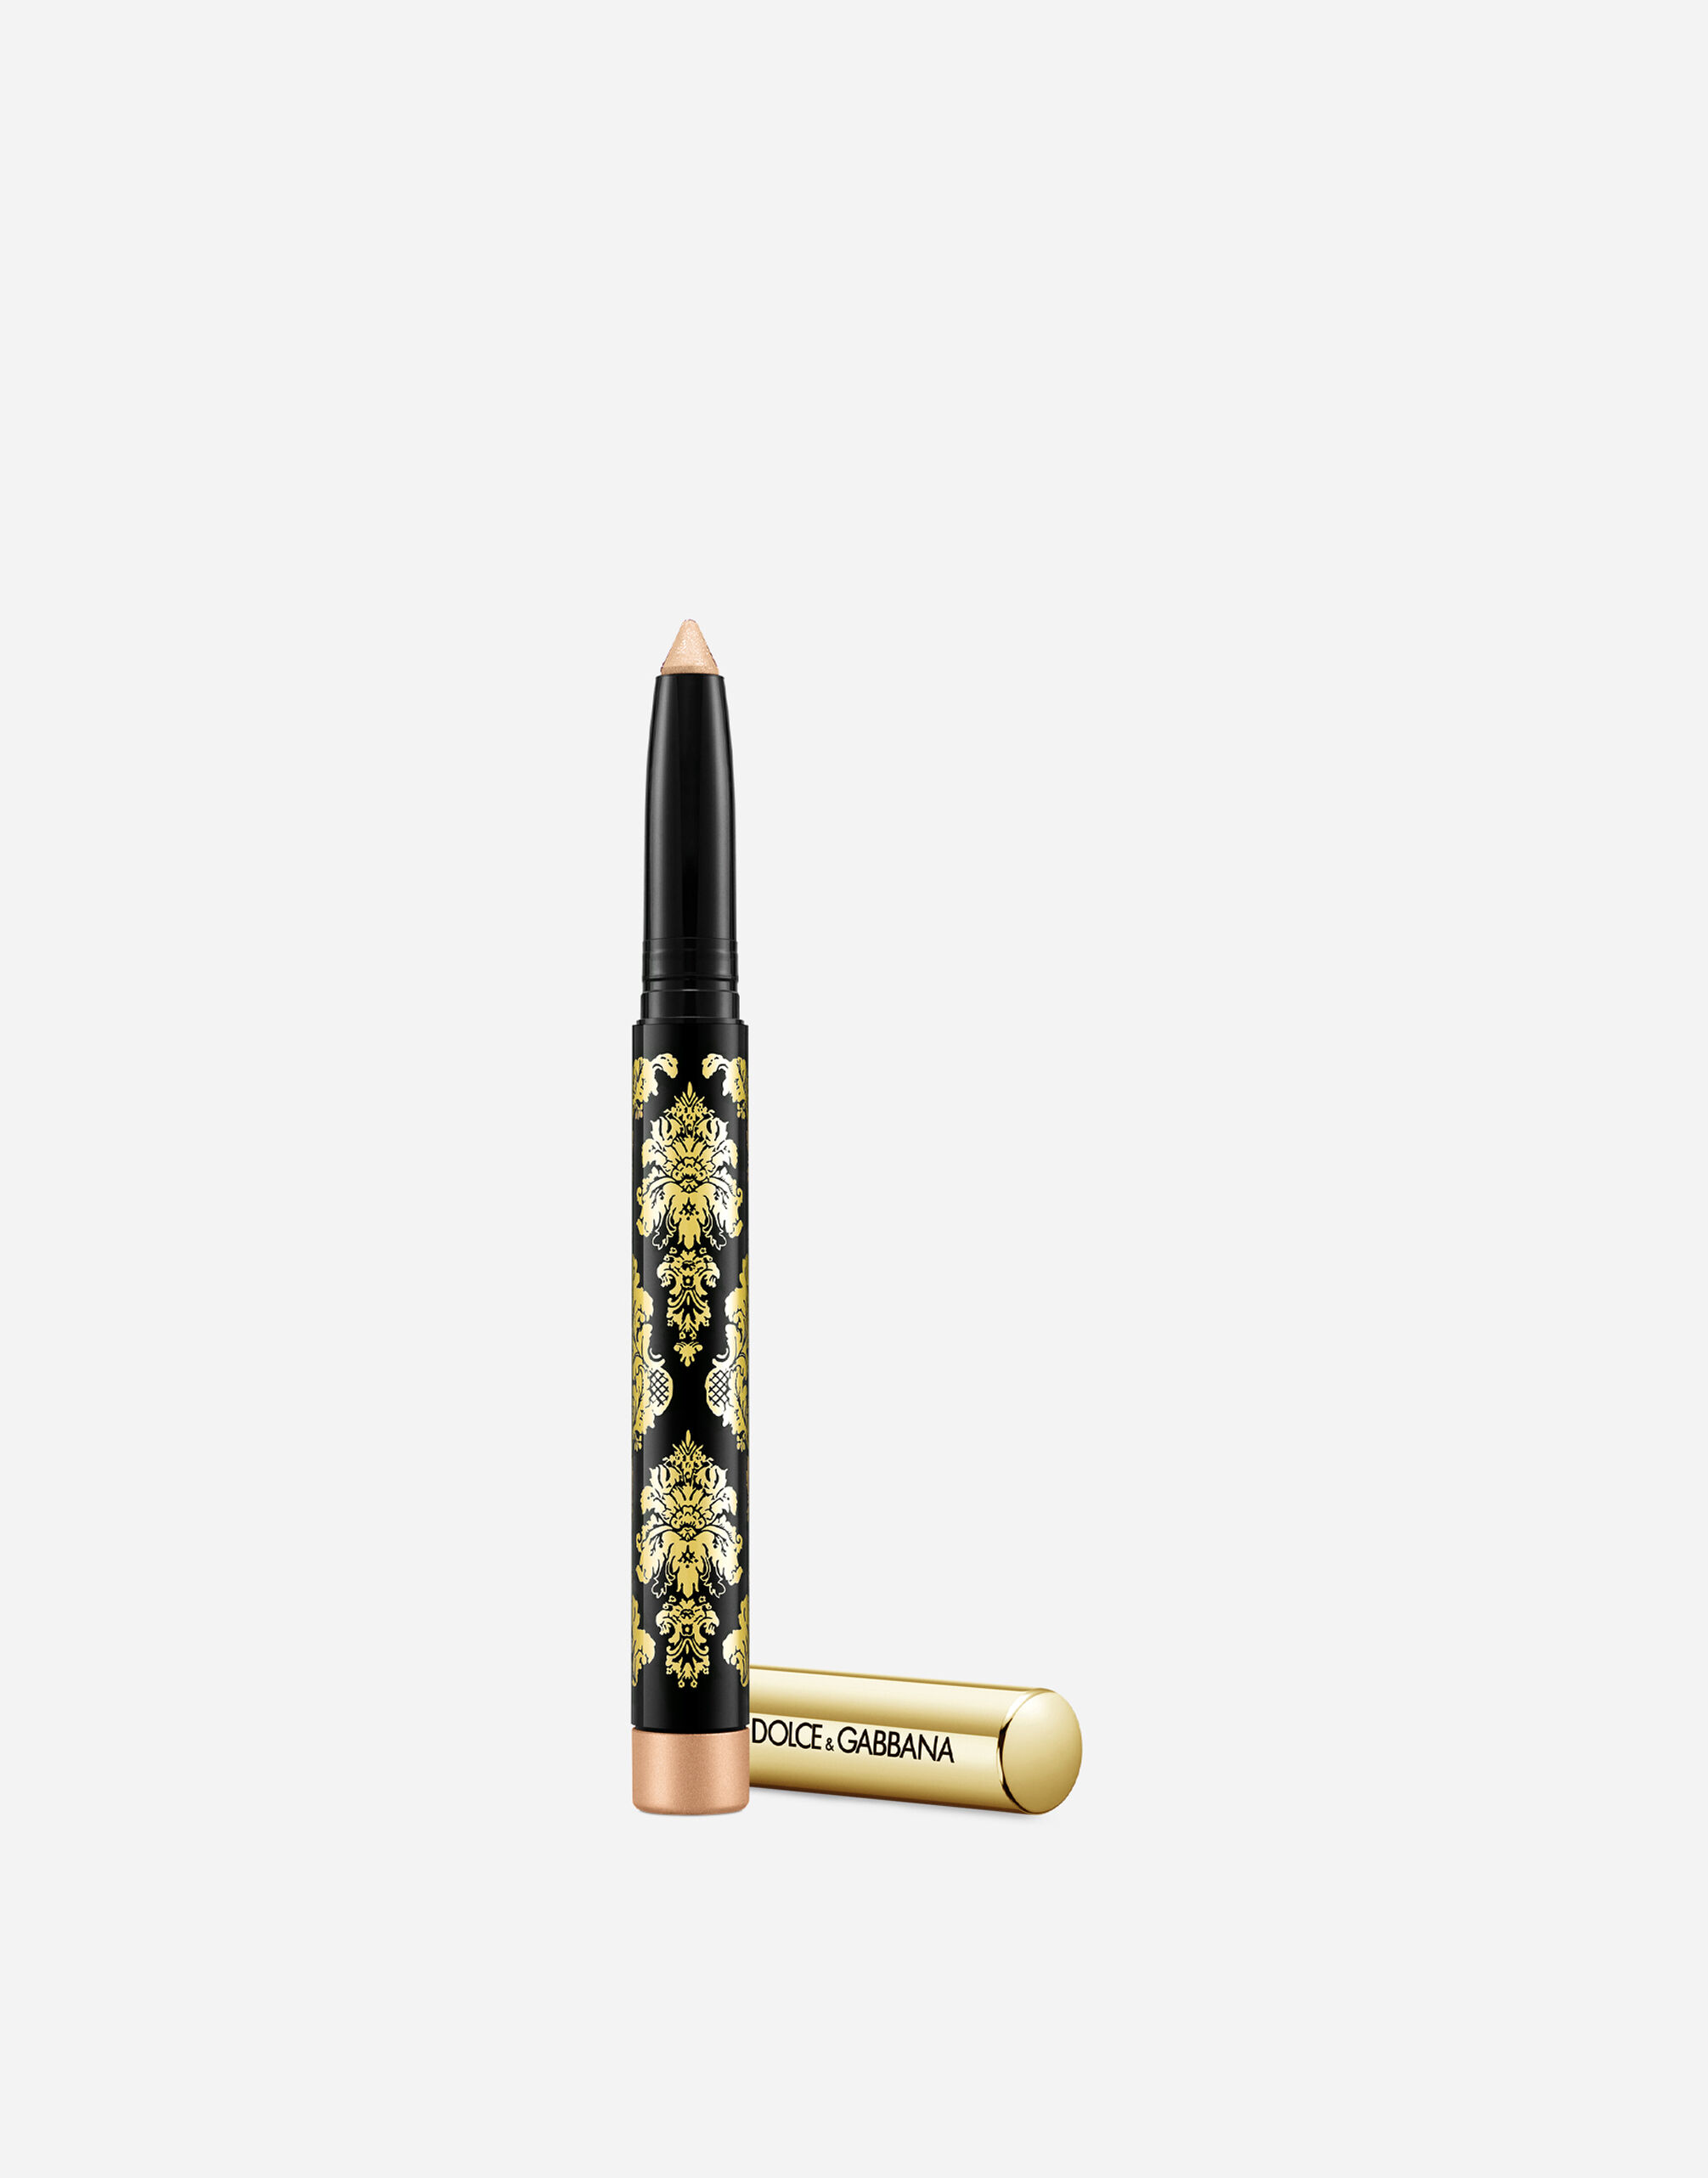 Тени-карандаш для глаз Dolce & Gabbana Intenseyes кремовые, №7 Shimmer, 1,4 г тени для век mac pro longwear paint pot кремовые princess cut 5 г